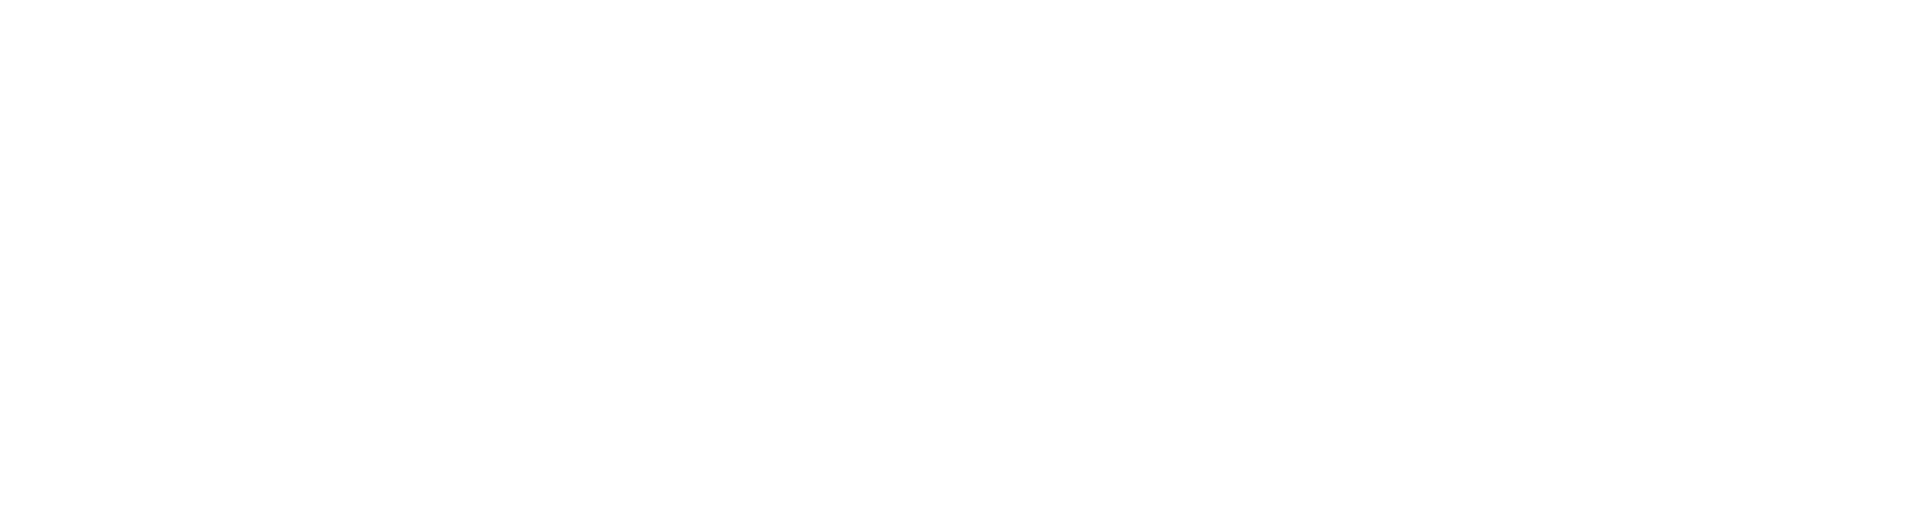 Heart of Stem Care Providers logo